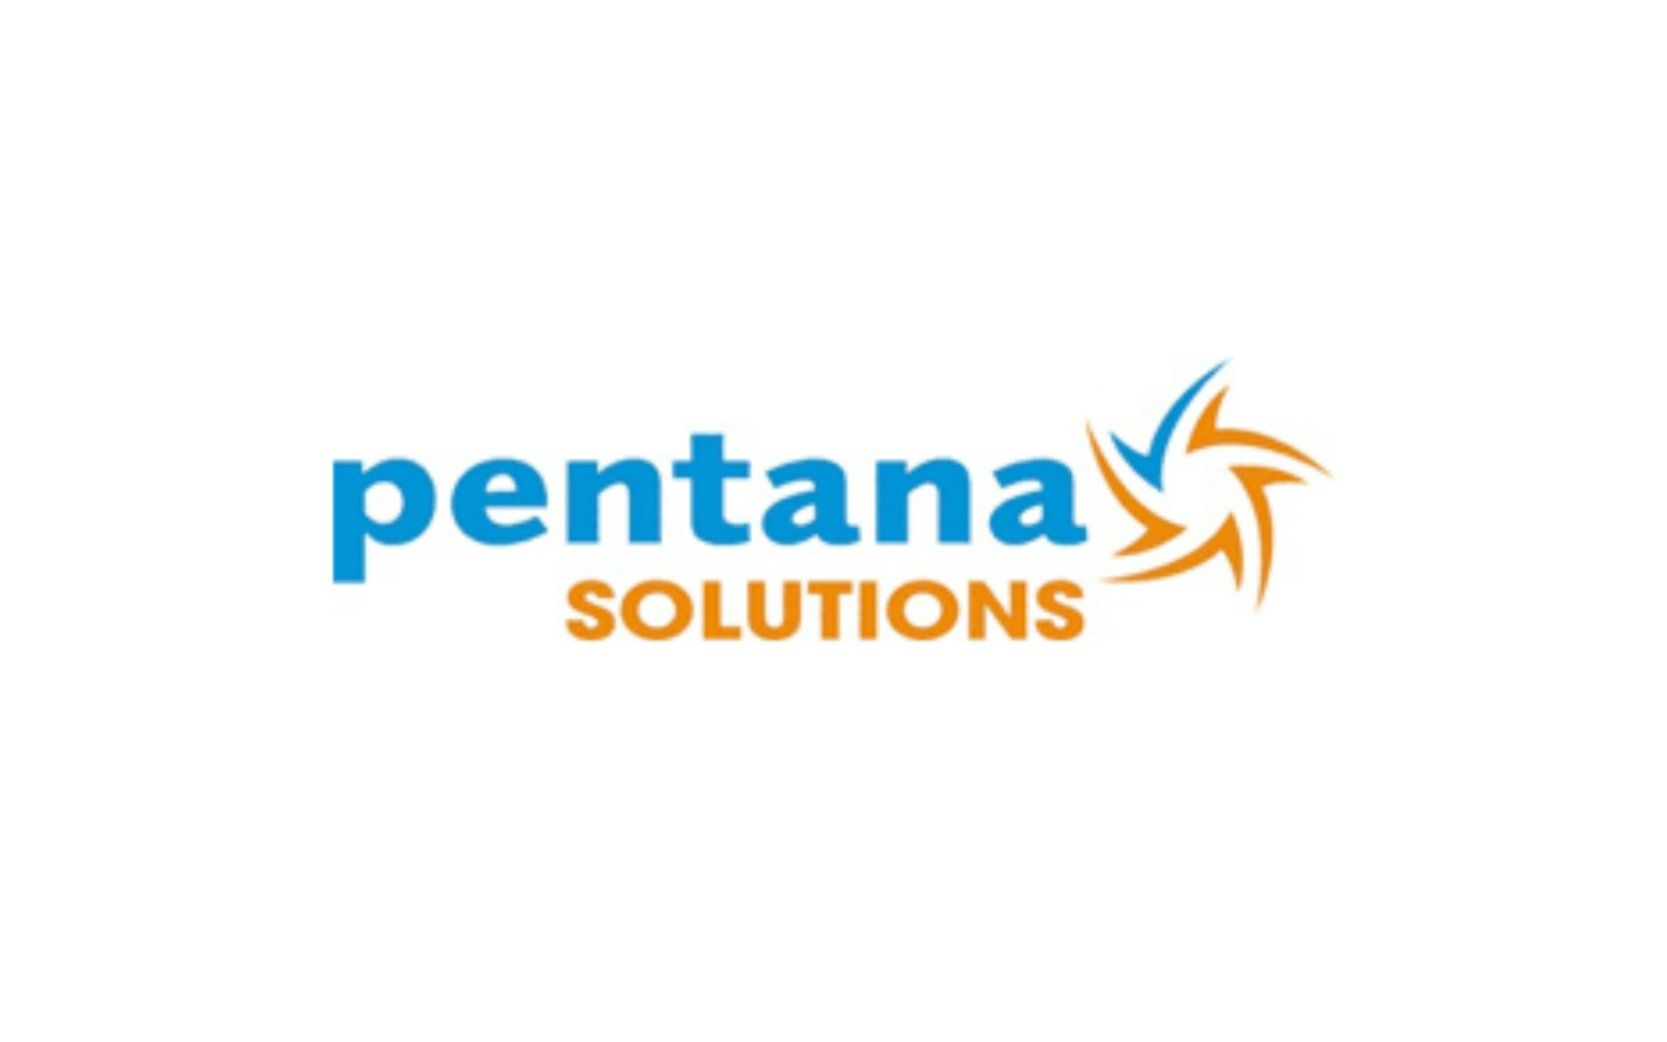 Pentana Solutions